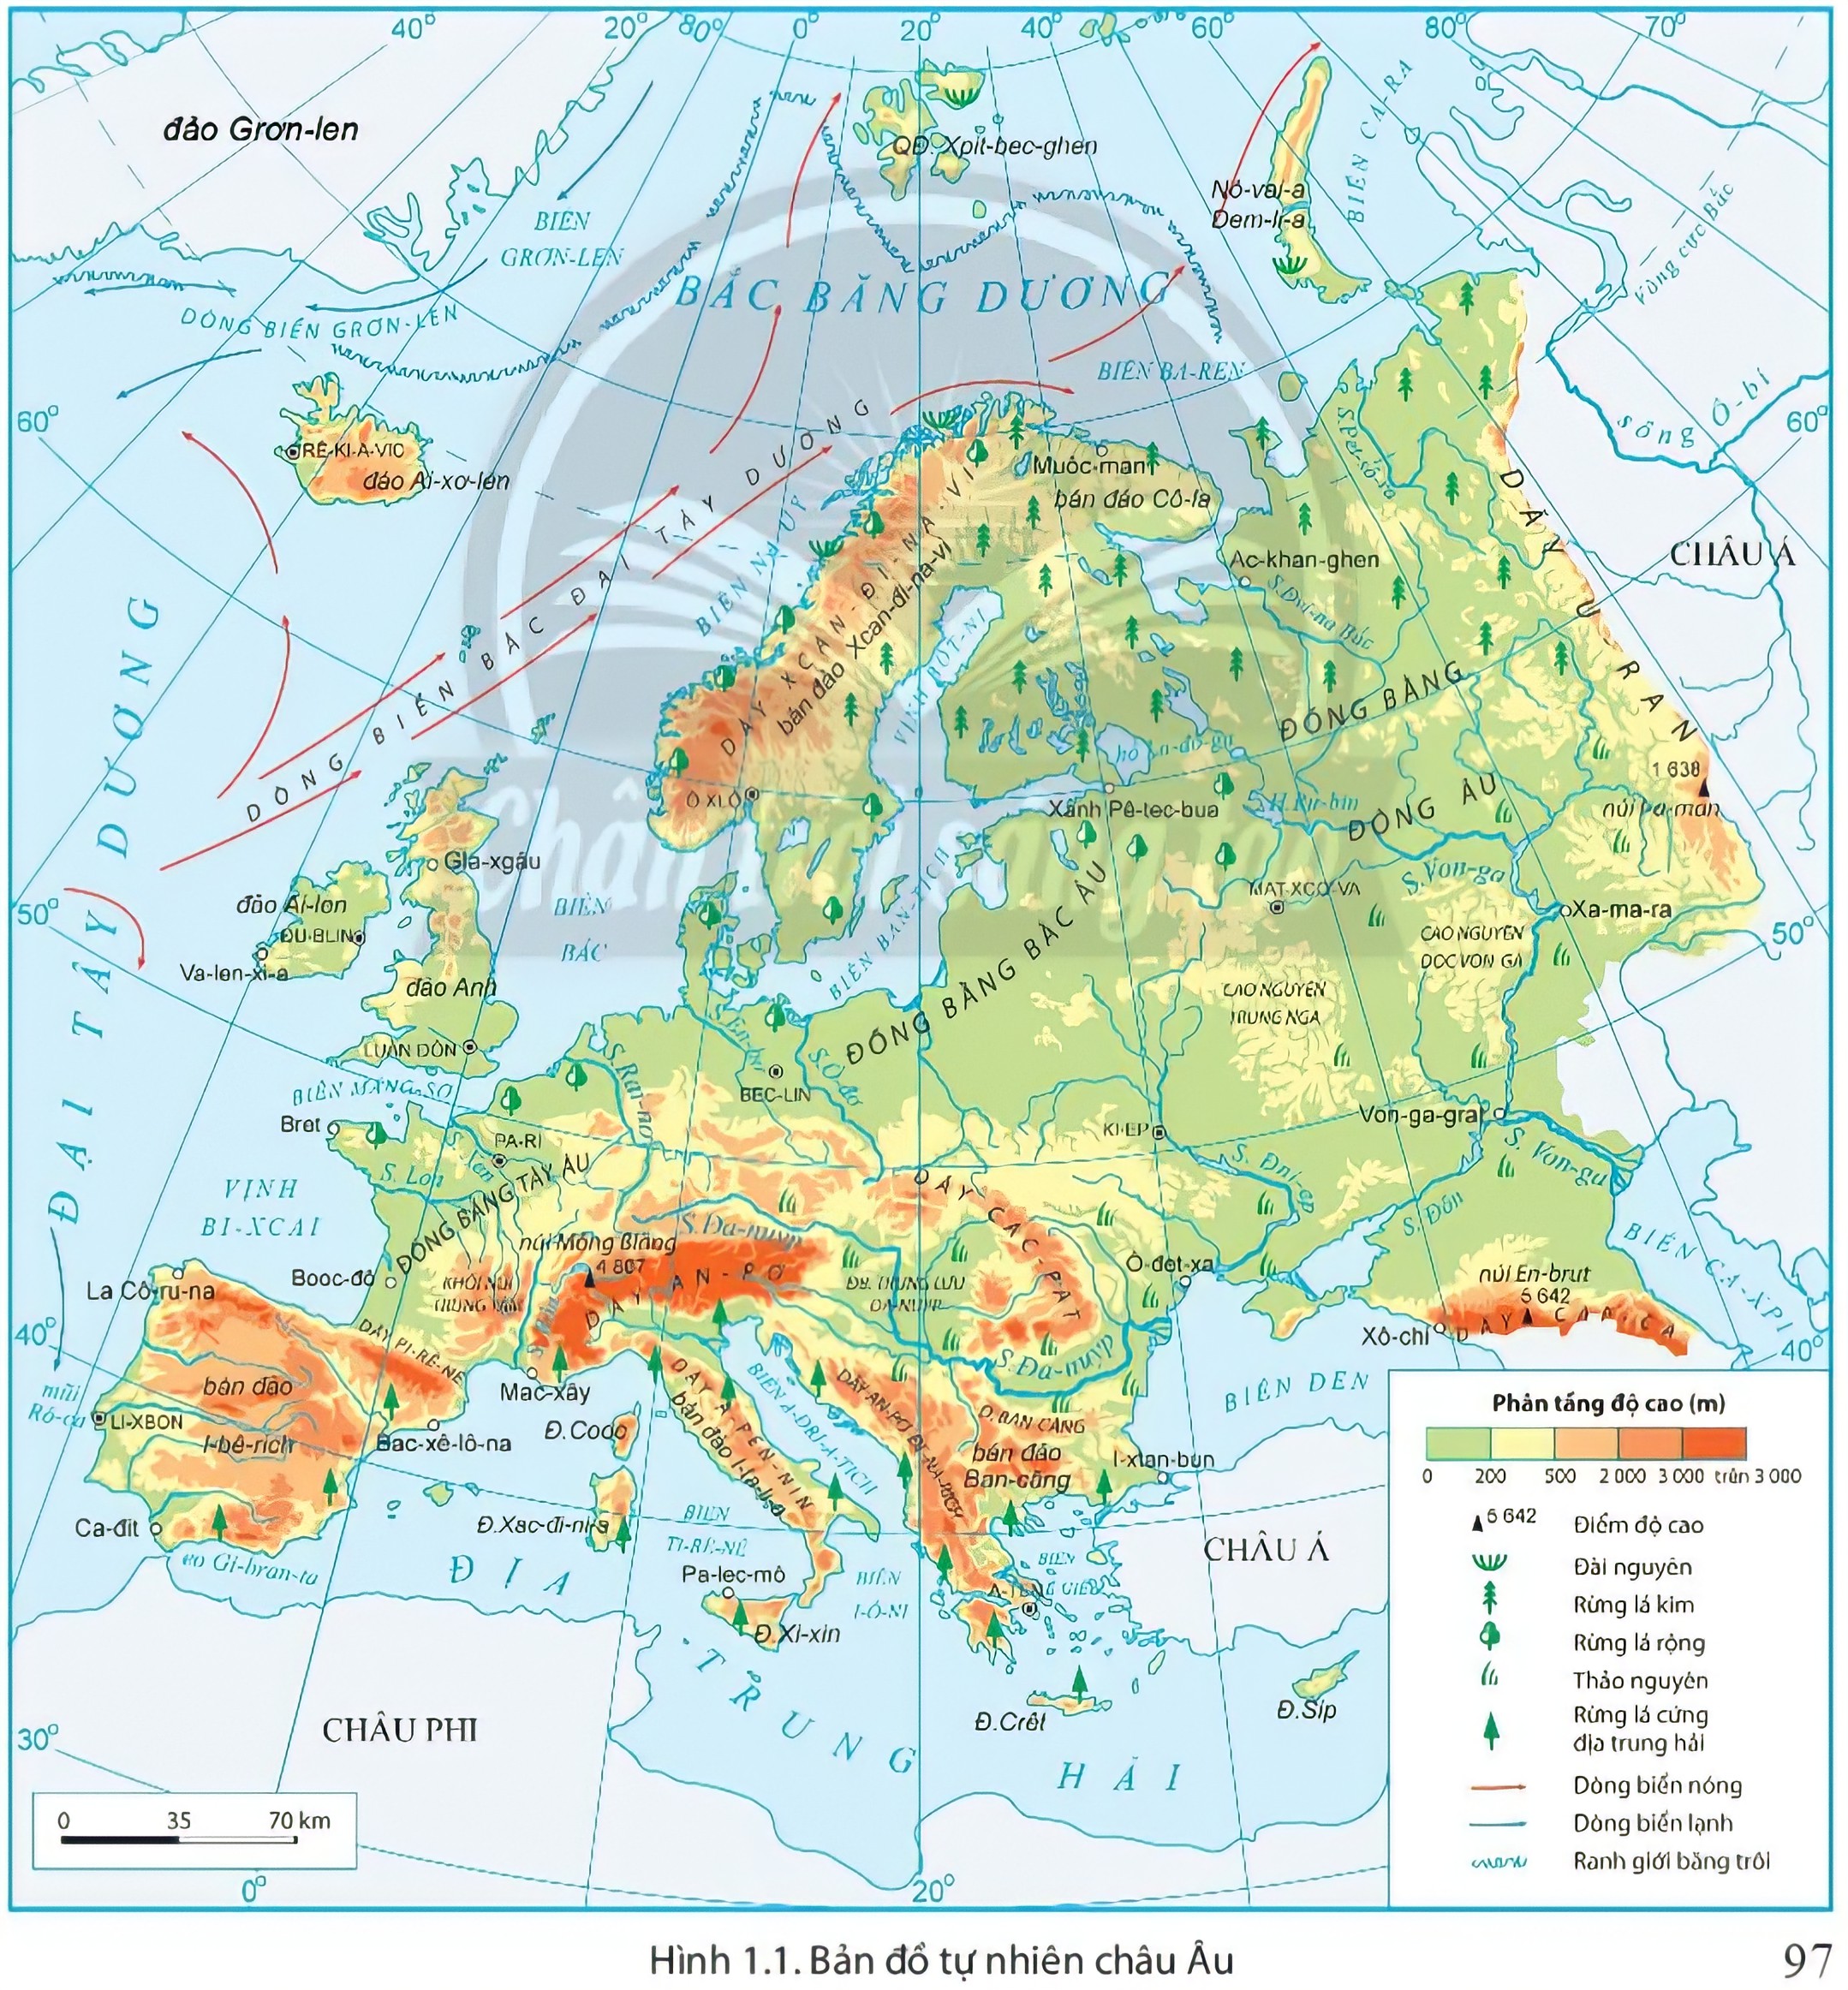 Bản đồ Châu Âu năm 2024: Một châu Âu liên kết mạnh mẽ đang phát triển, và bản đồ Châu Âu năm 2024 sẽ hiển thị rõ ràng cách mà điều đó xảy ra. Từ mối quan tâm chung về môi trường đến các thỏa thuận thương mại thông minh, những thay đổi tích cực đang xảy ra trên khắp châu lục. Hãy khám phá và cảm nhận những giai đoạn mới đầy hứa hẹn trong lịch sử Châu Âu.